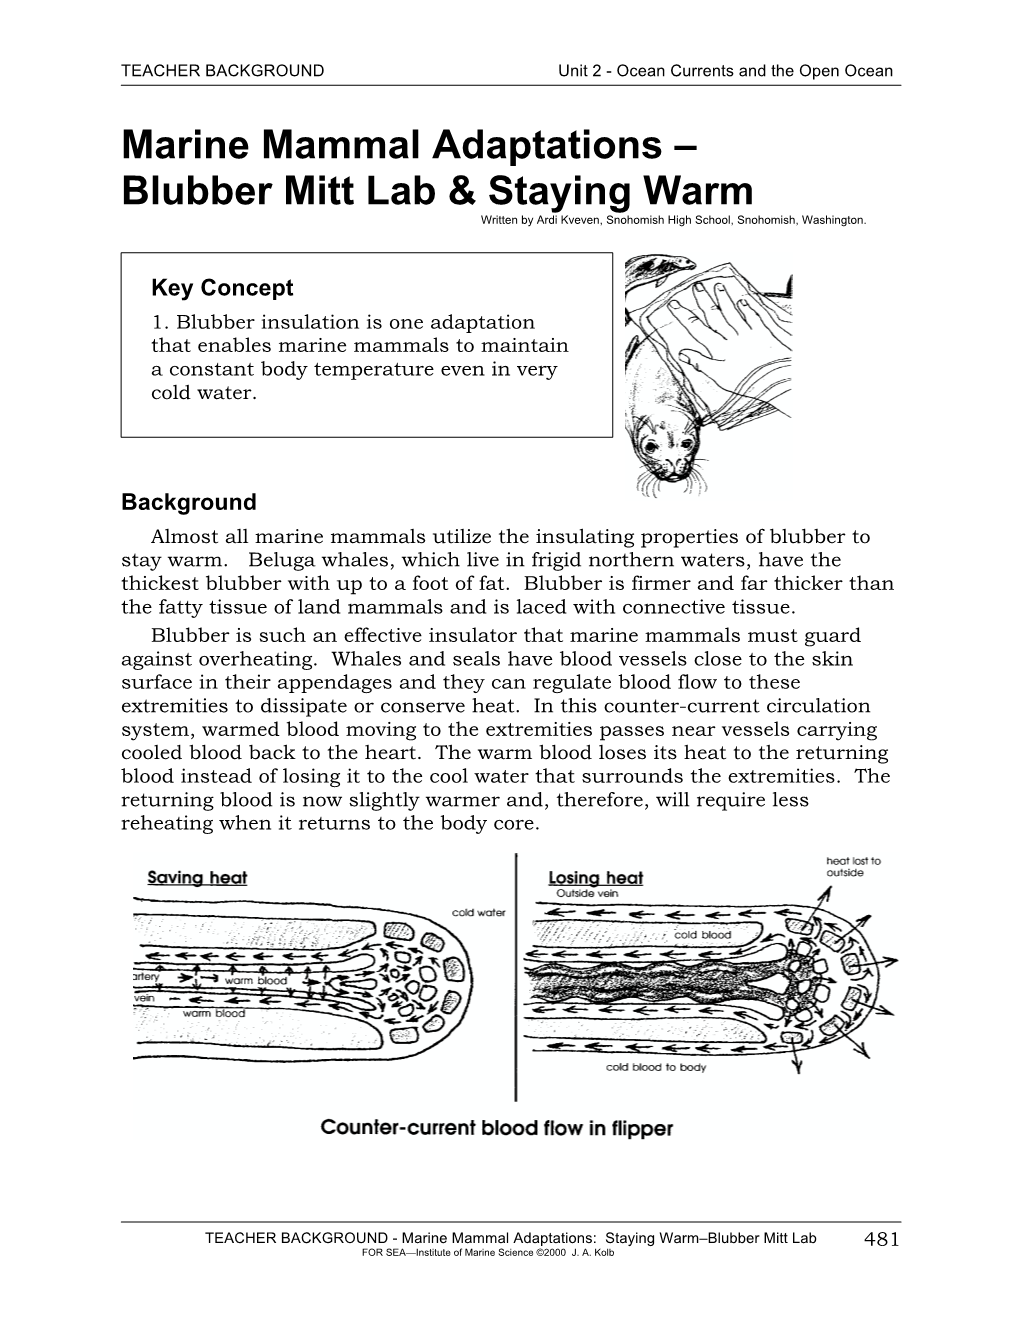 Blubber Mitt Lab & Staying Warm